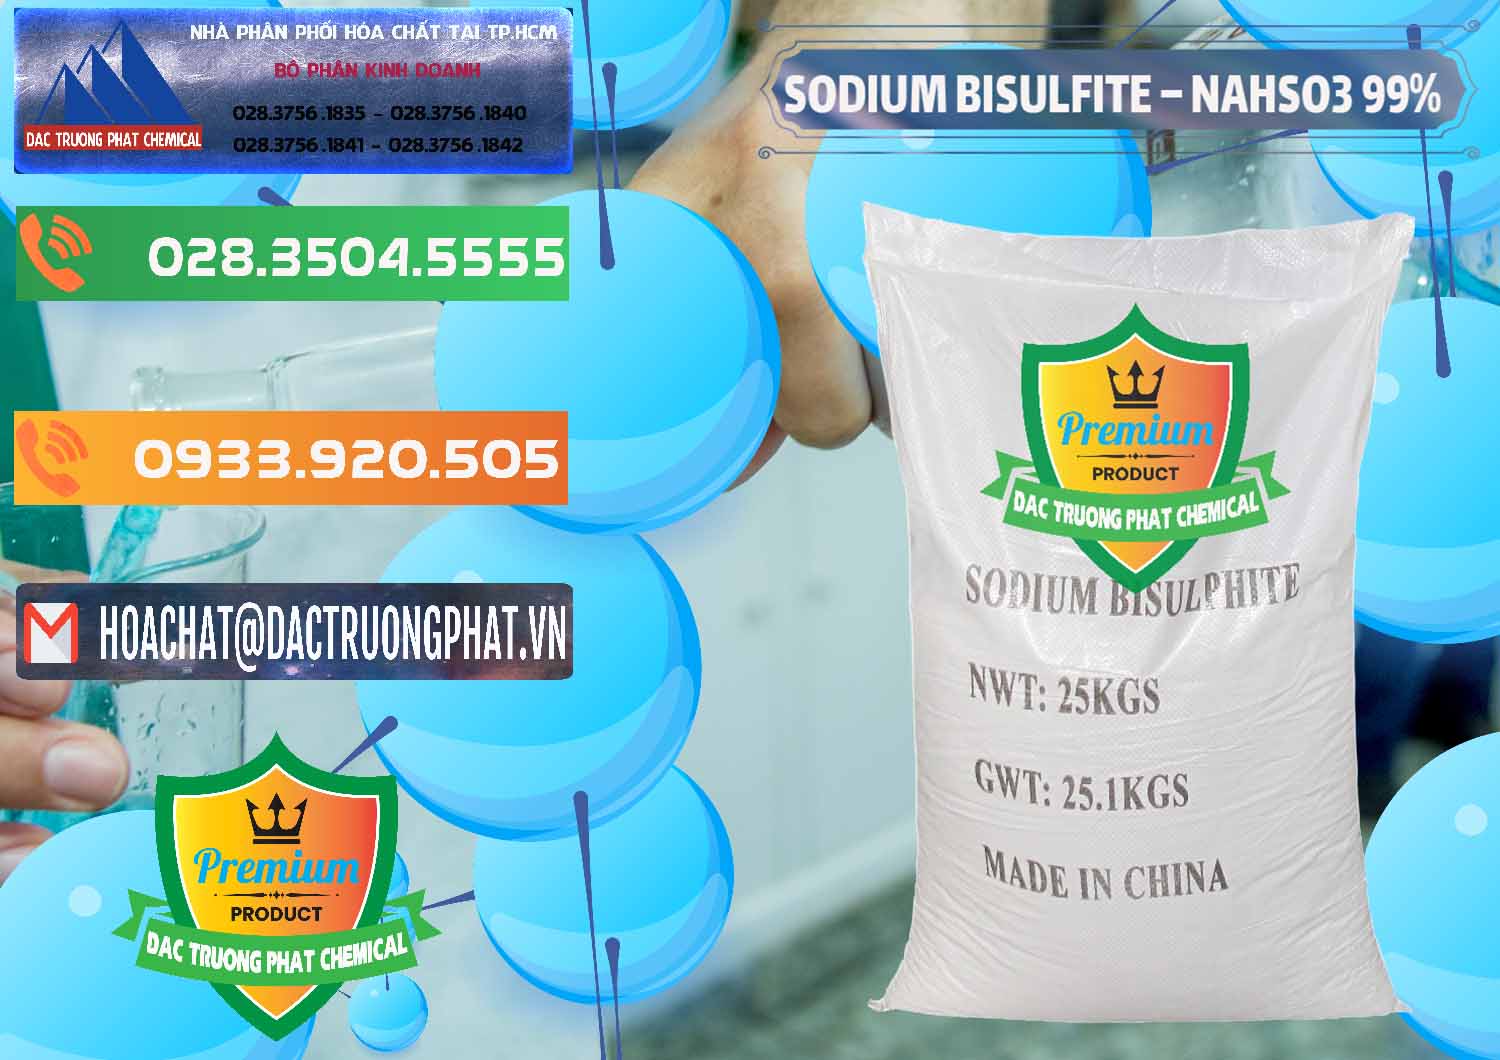 Cty cung cấp _ bán Sodium Bisulfite – NAHSO3 Trung Quốc China - 0140 - Chuyên cung ứng và phân phối hóa chất tại TP.HCM - hoachatxulynuoc.com.vn